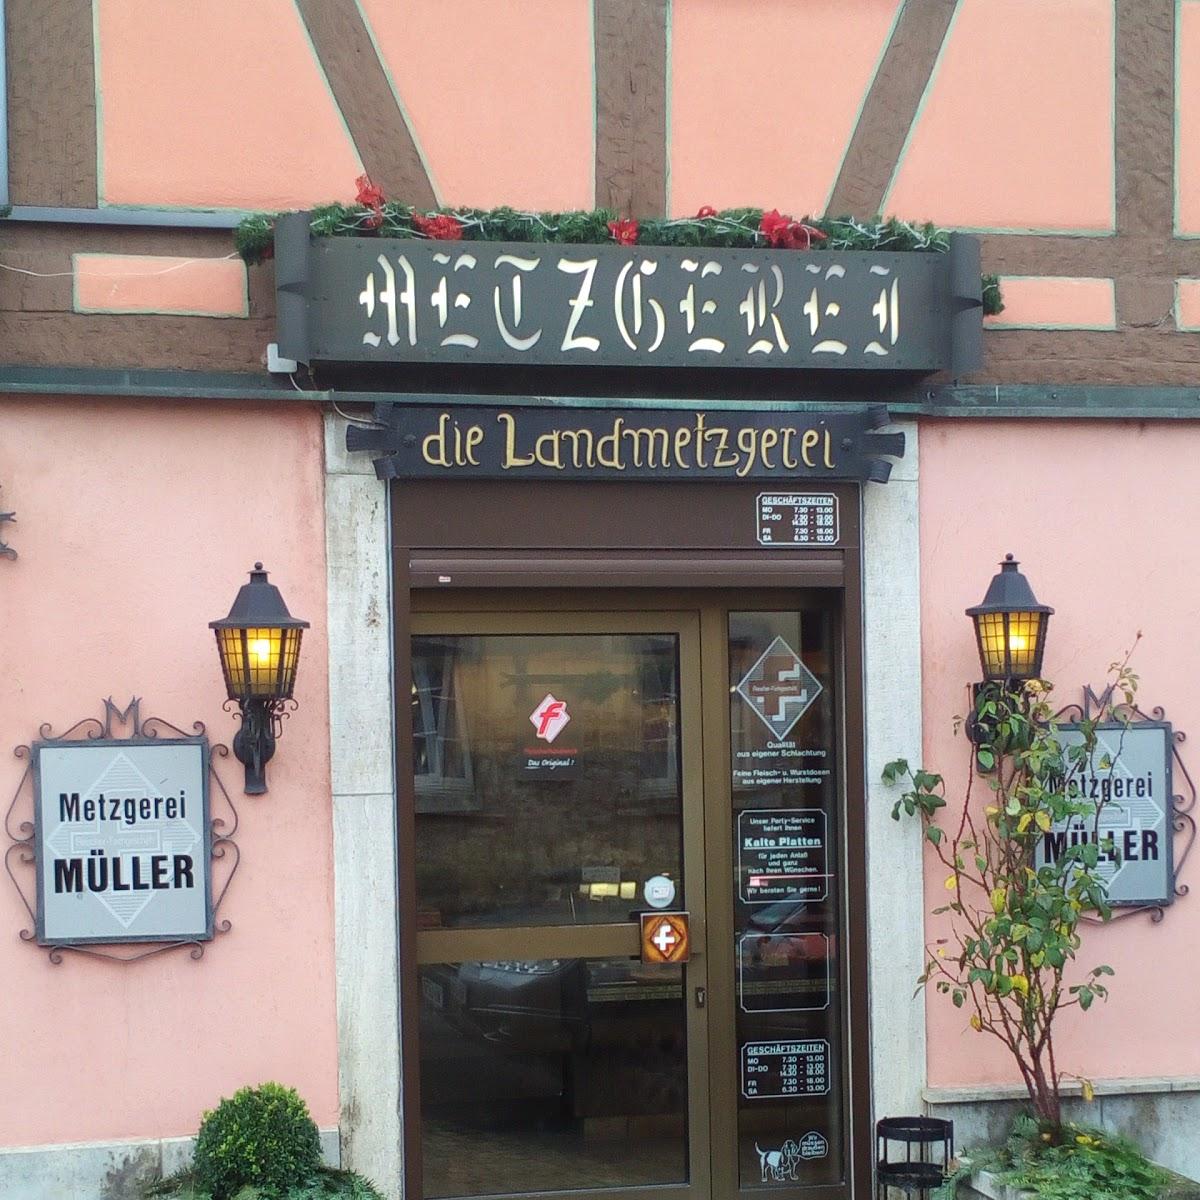 Restaurant "Landmetzgerei Müller" in Kleinrinderfeld